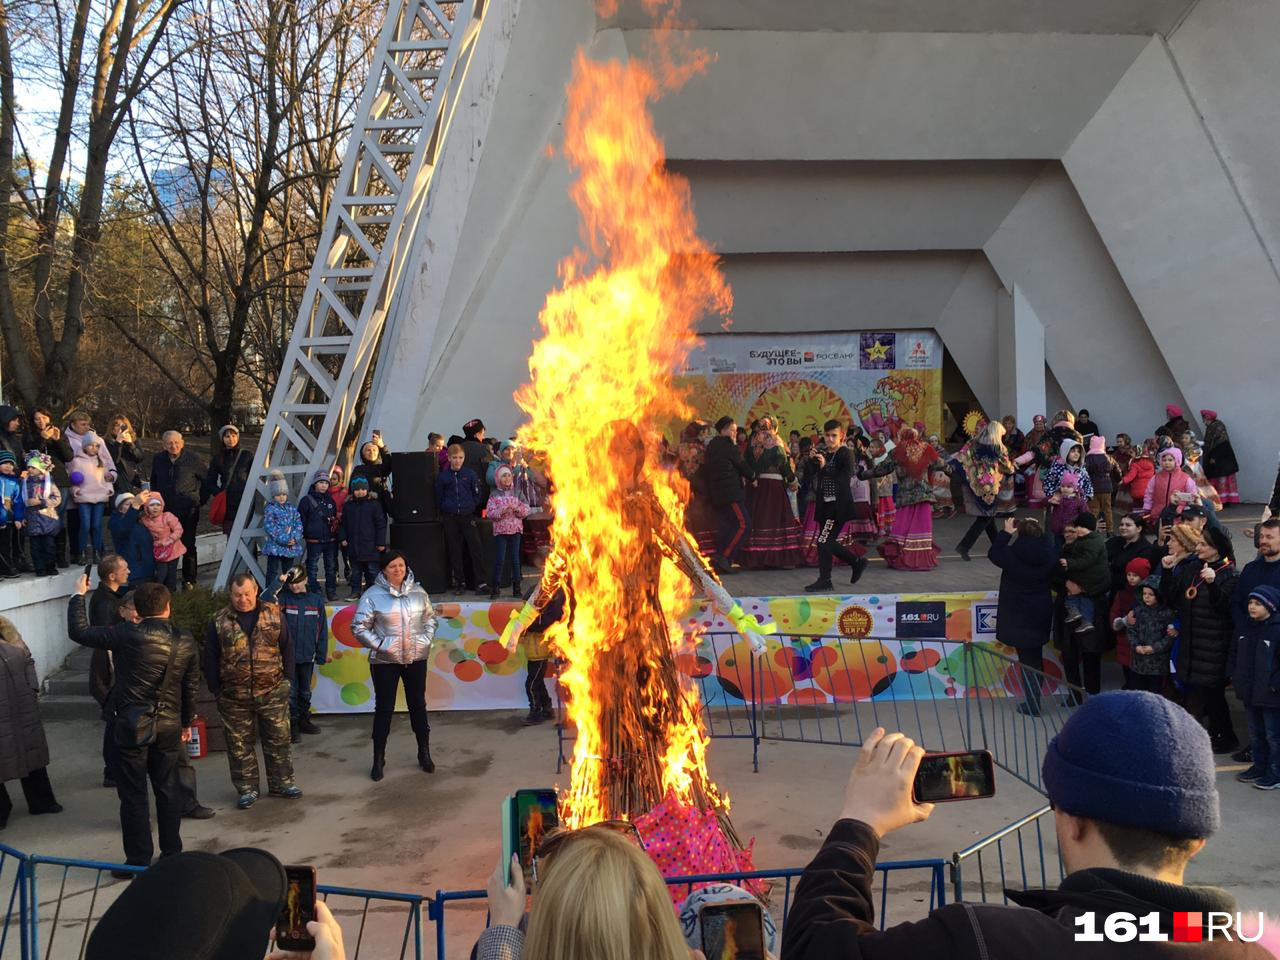 Ради того чтобы посмотреть, как будут сжигать чучело, сотни ростовчан прождали несколько часов